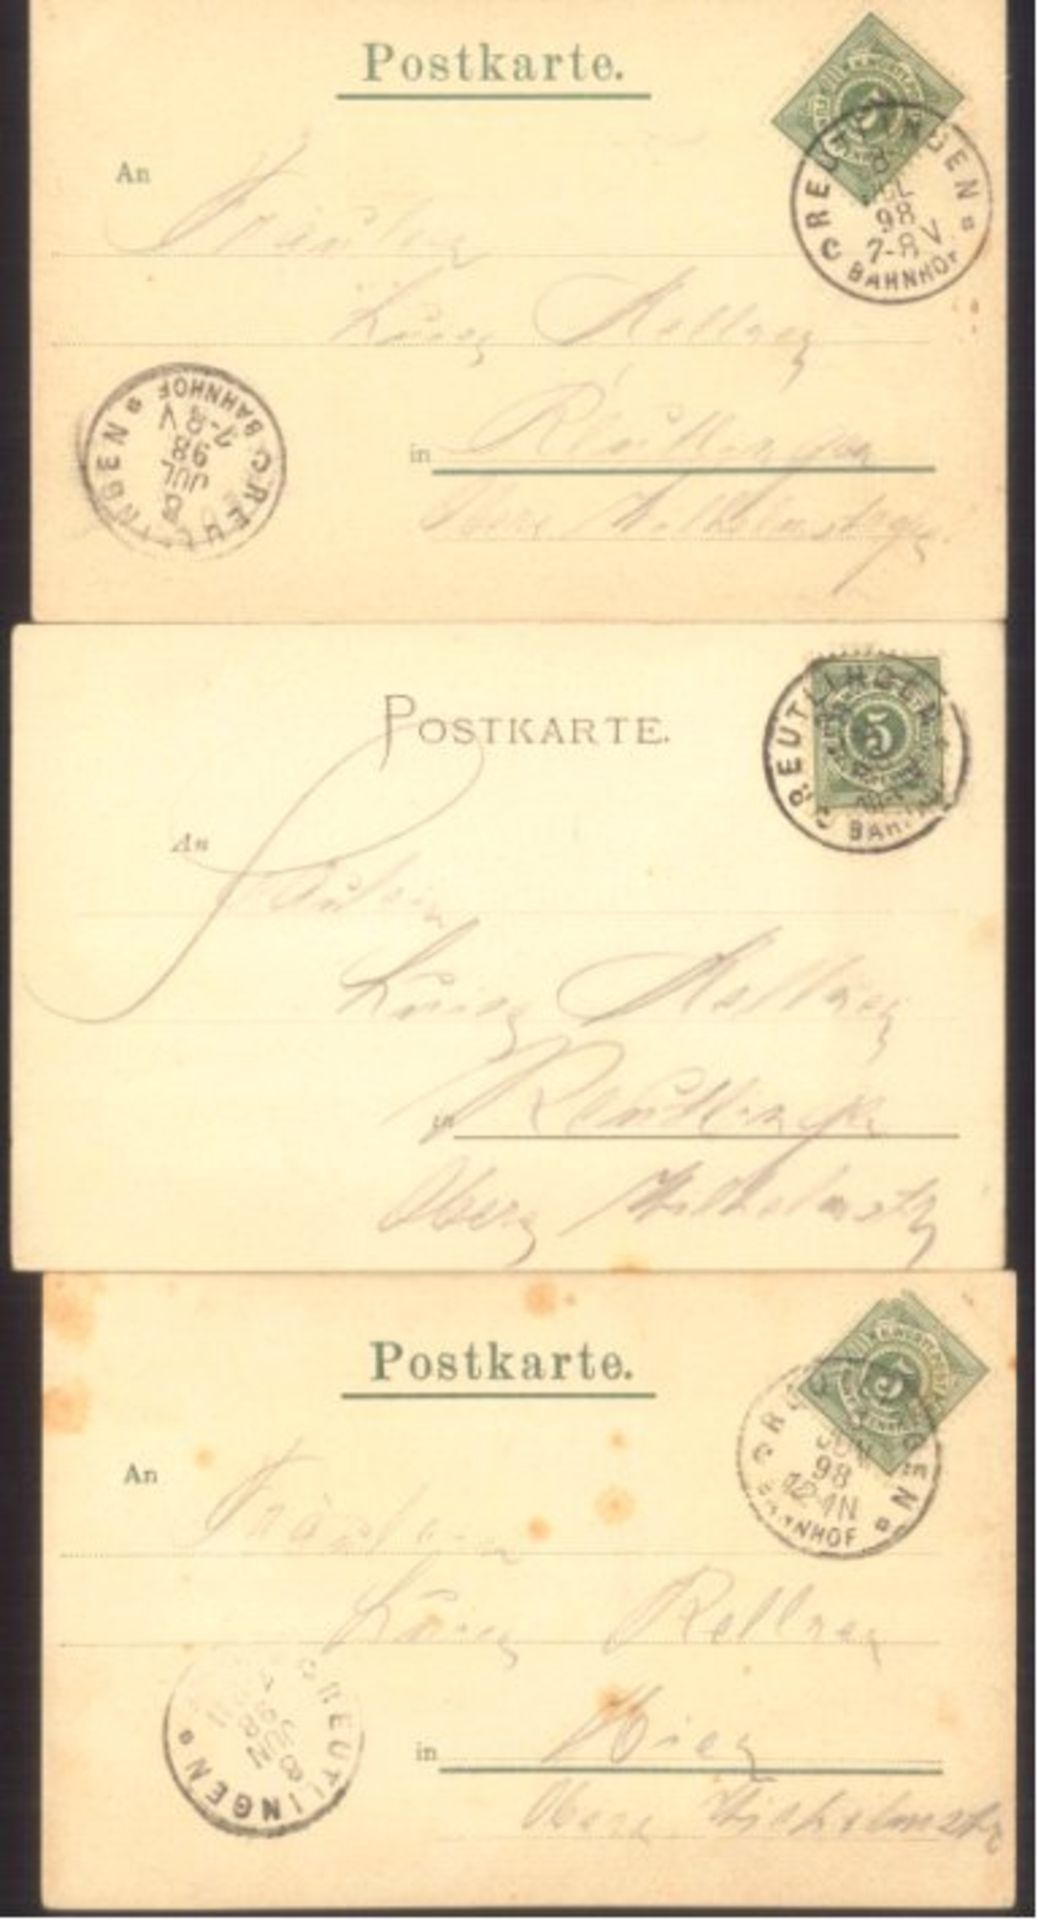 SCHWABEN, Schwäbisches Volksleben, gelaufen 18983 verschiedene schwarz/weiße Ansichtskarten, alle - Bild 2 aus 2